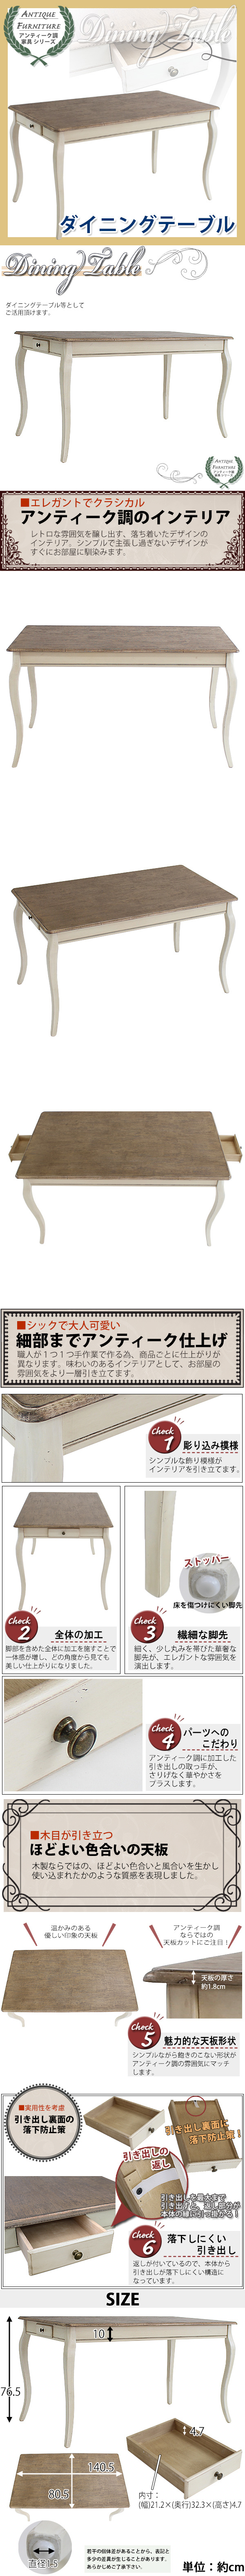 【大阪直販】アンティーク調 ダイニングテーブル 木製 家具 白 テーブル 引出 その他